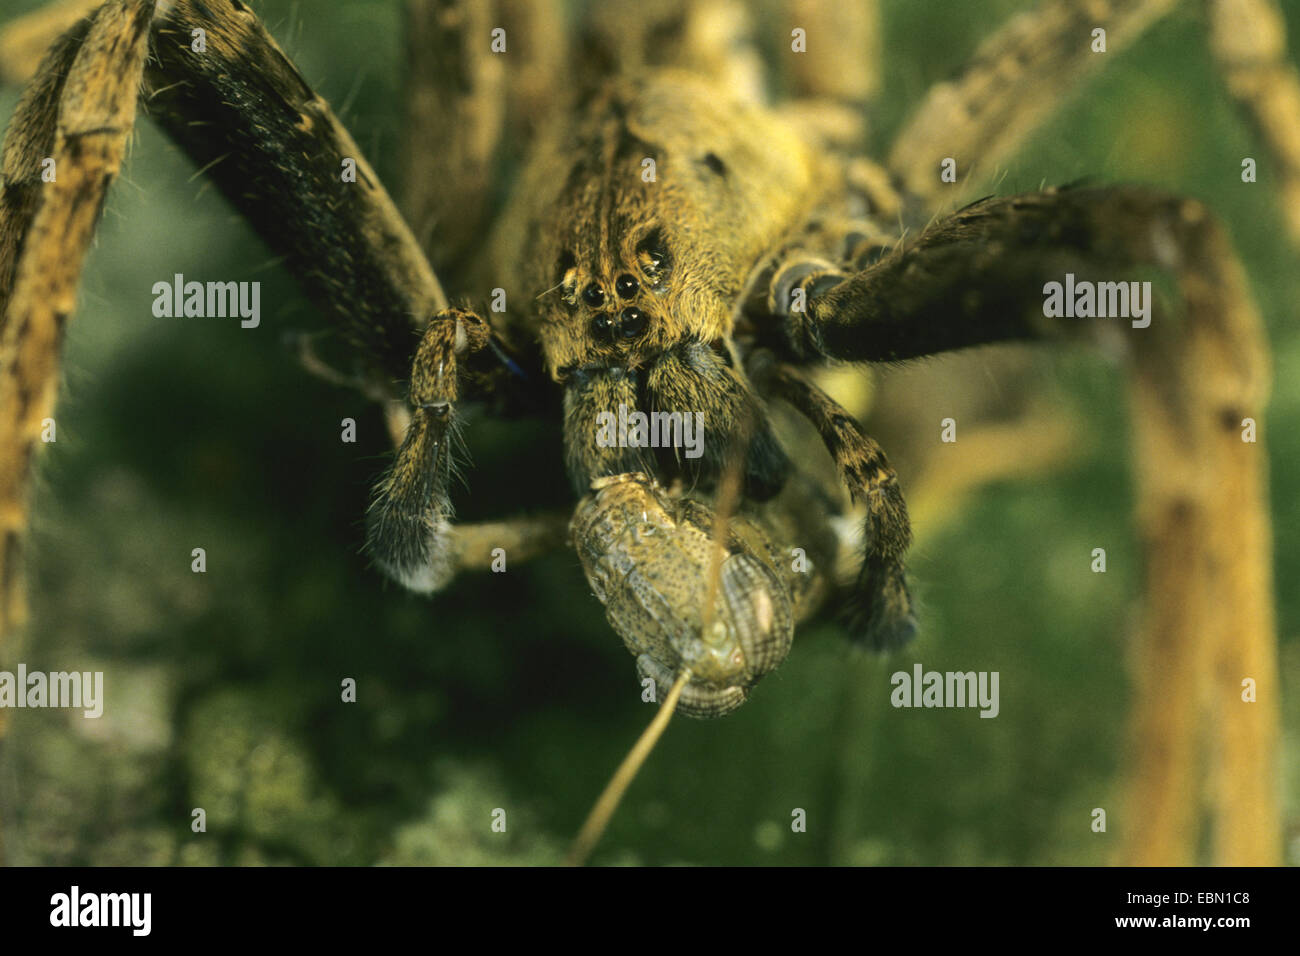 wandering spiders, running spiders (Ctenidae, Ctenidae), portrait, Franzoesisch-Guayana Stock Photo